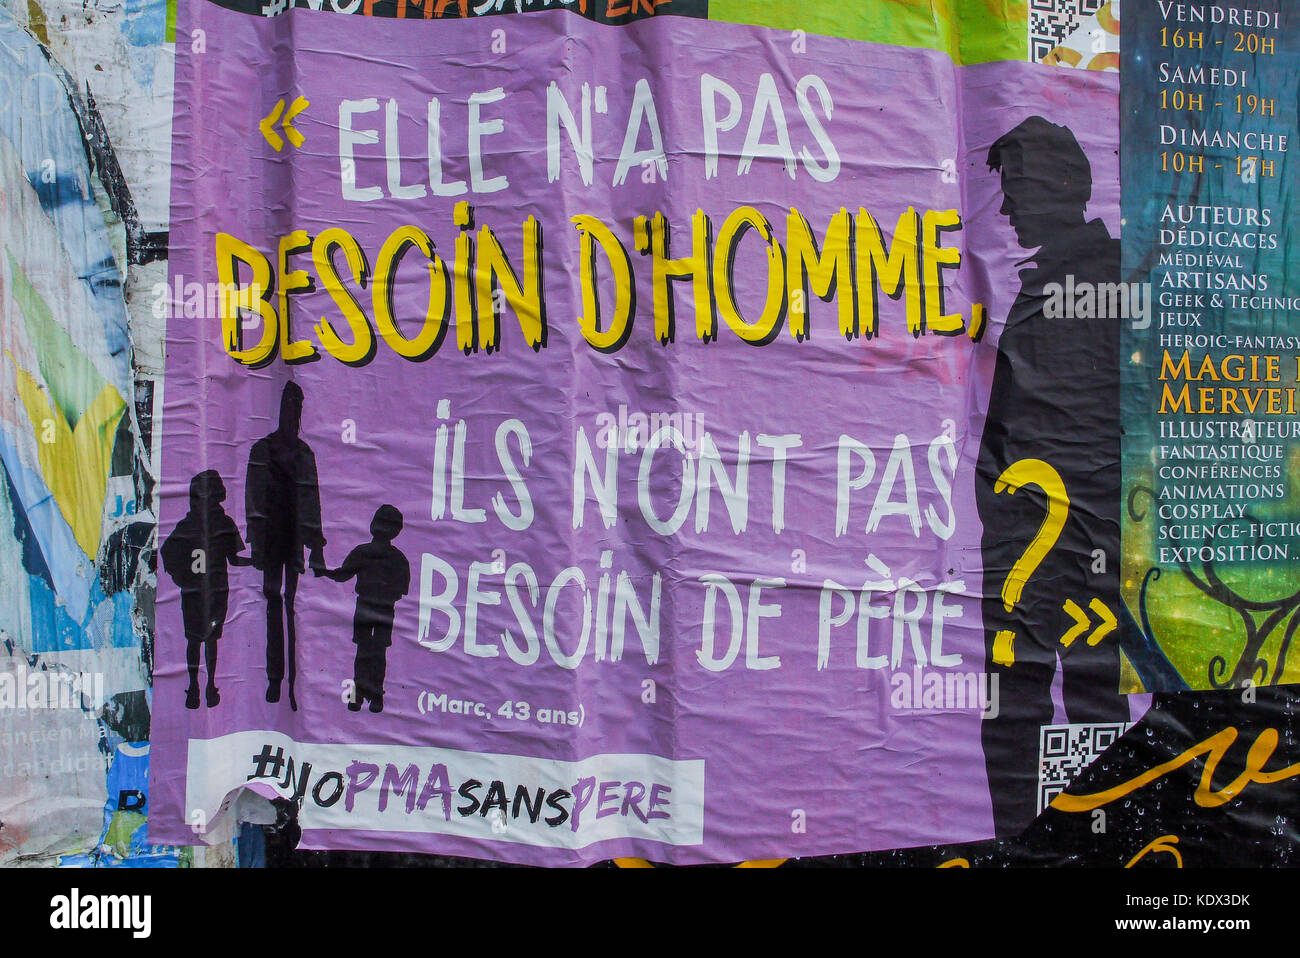 L'anti-gpa (gestional surrogacy) affiches, Paris, France Banque D'Images